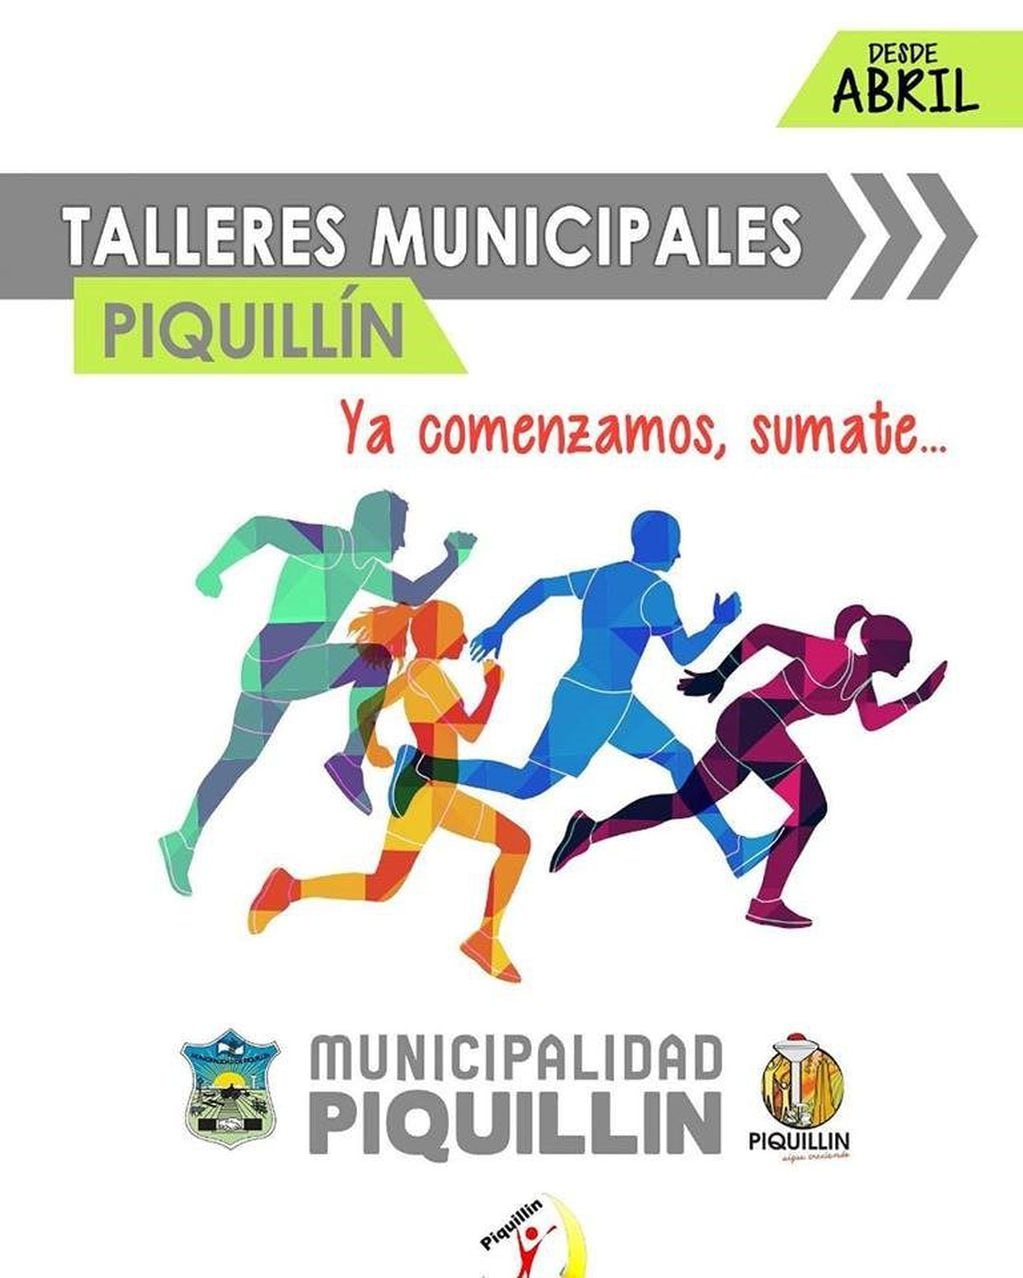 Talleres municipales Piquillín